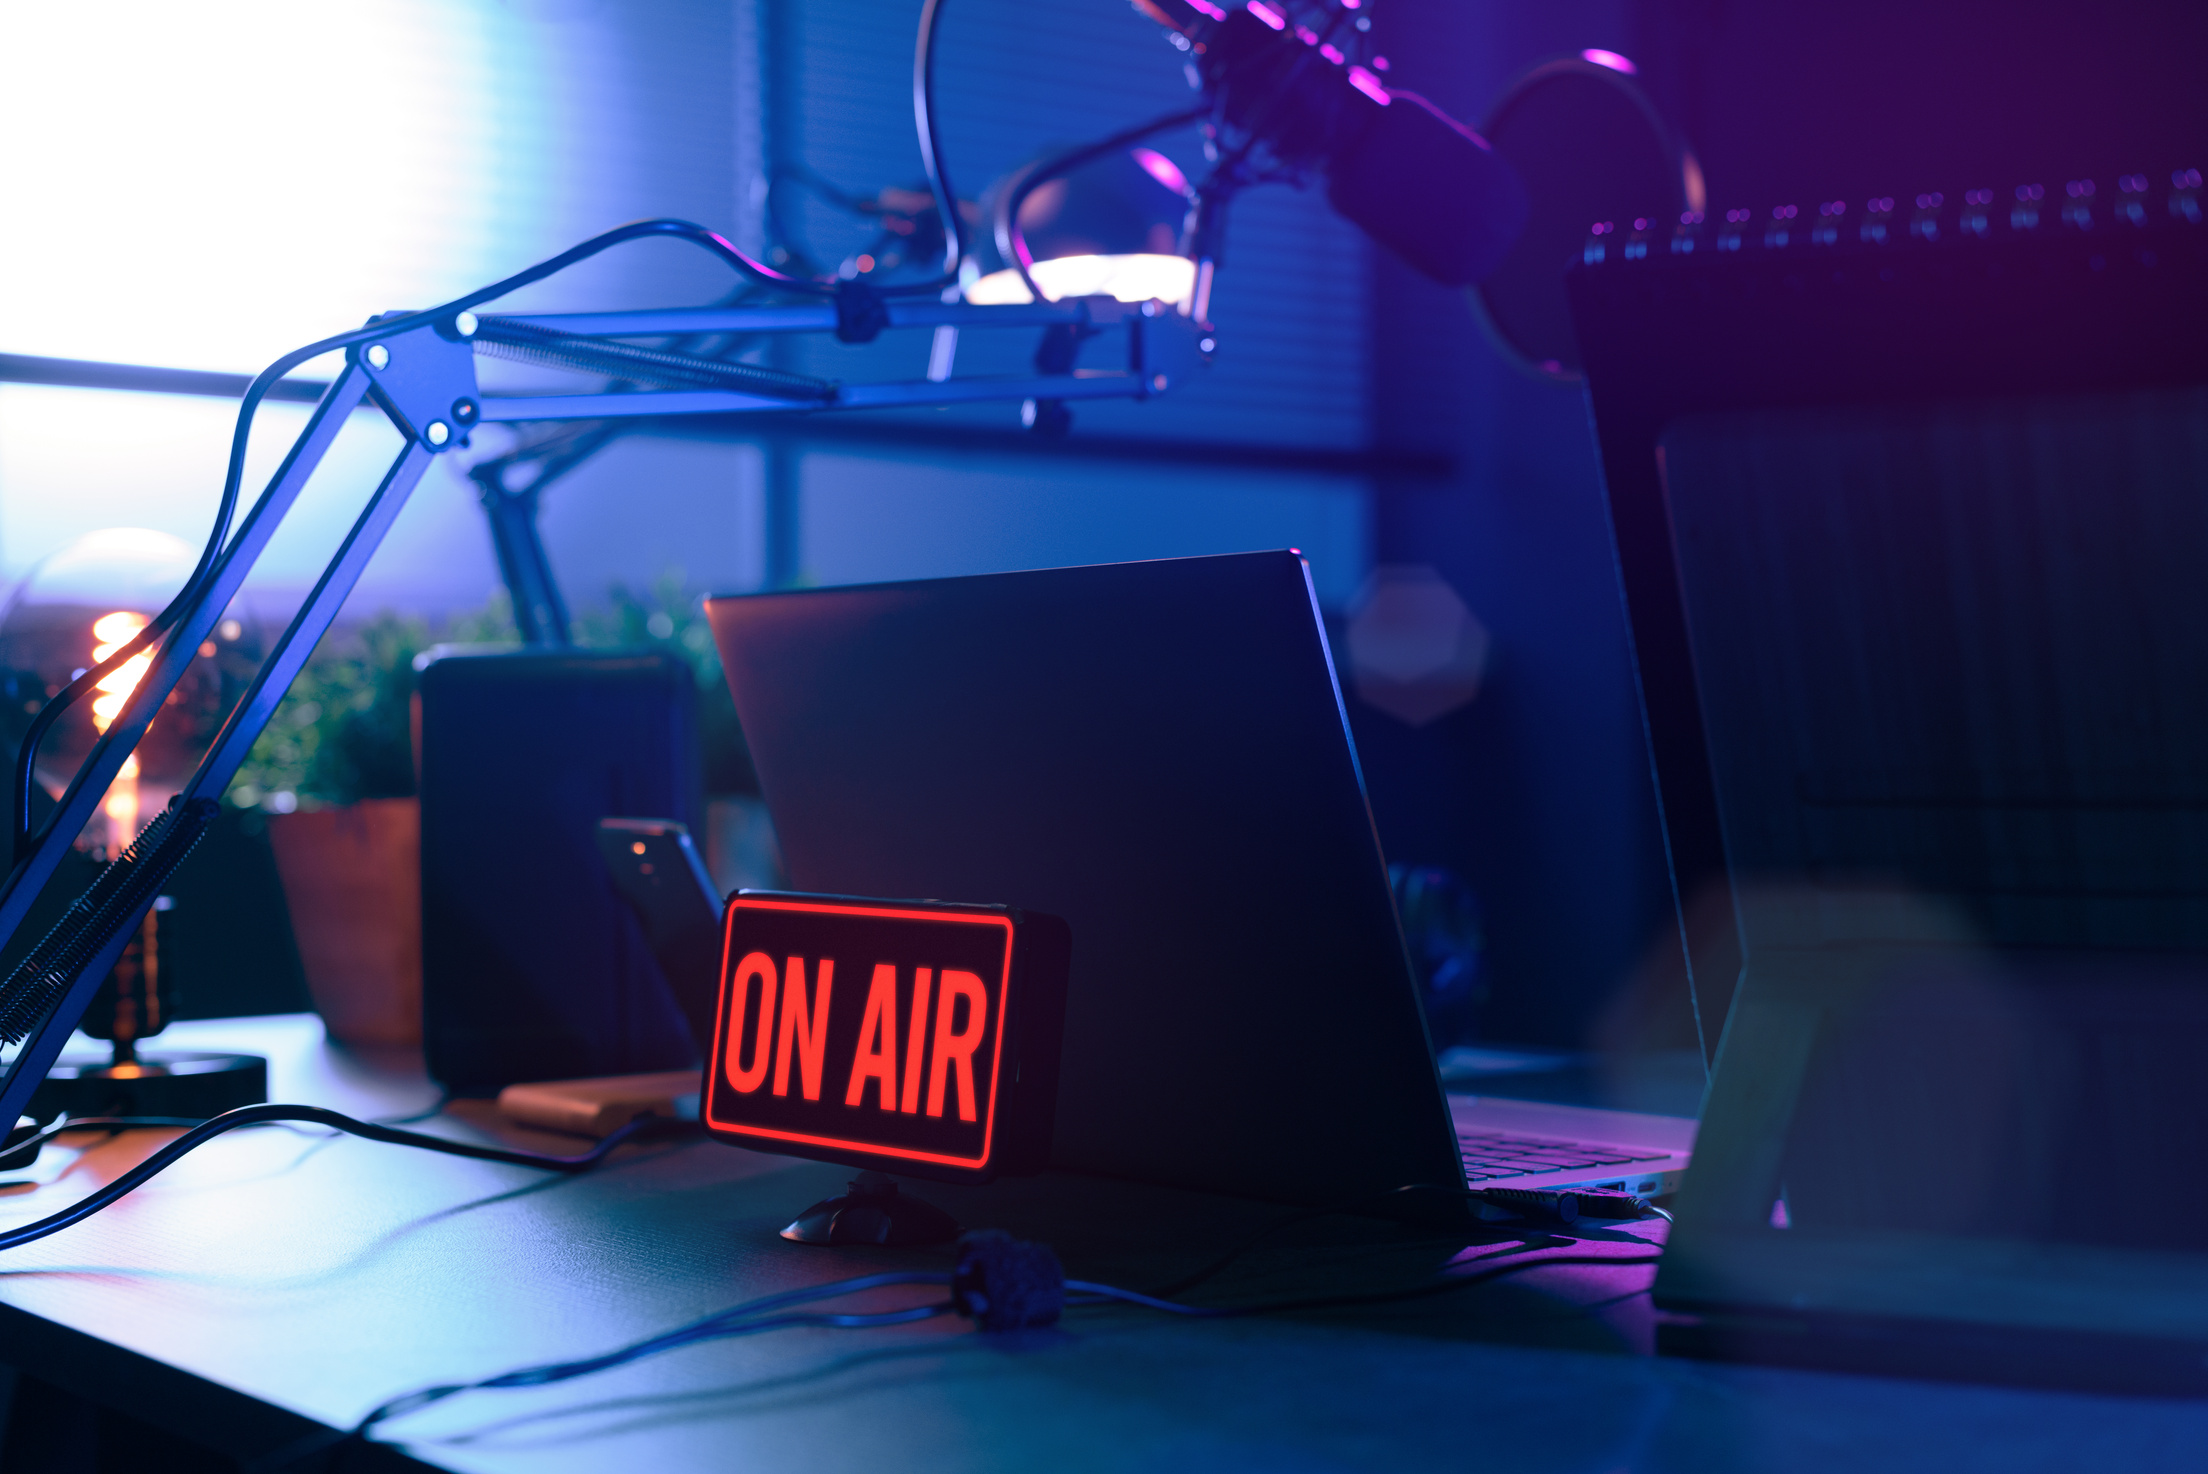 Radio Studio on Air